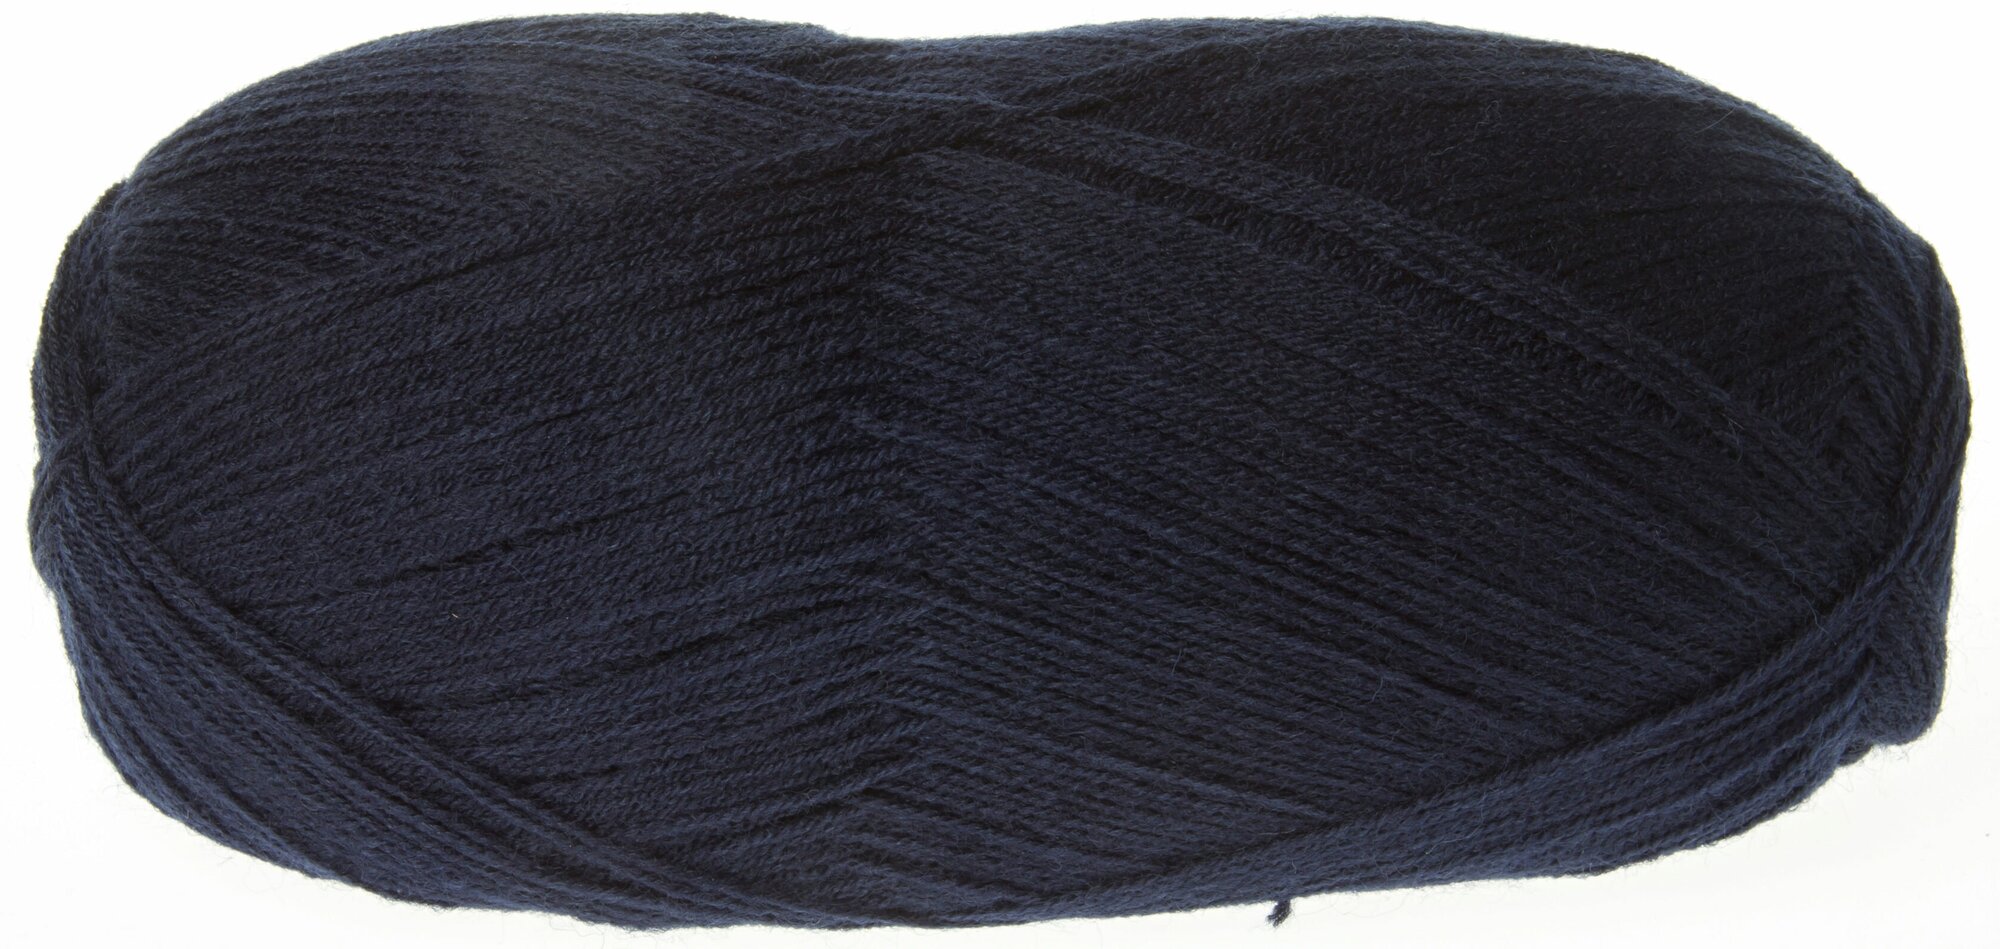 Пряжа Alize Lanagold 800 темно-синий (58), 51%акрил/49%шерсть, 800м, 100г, 2шт